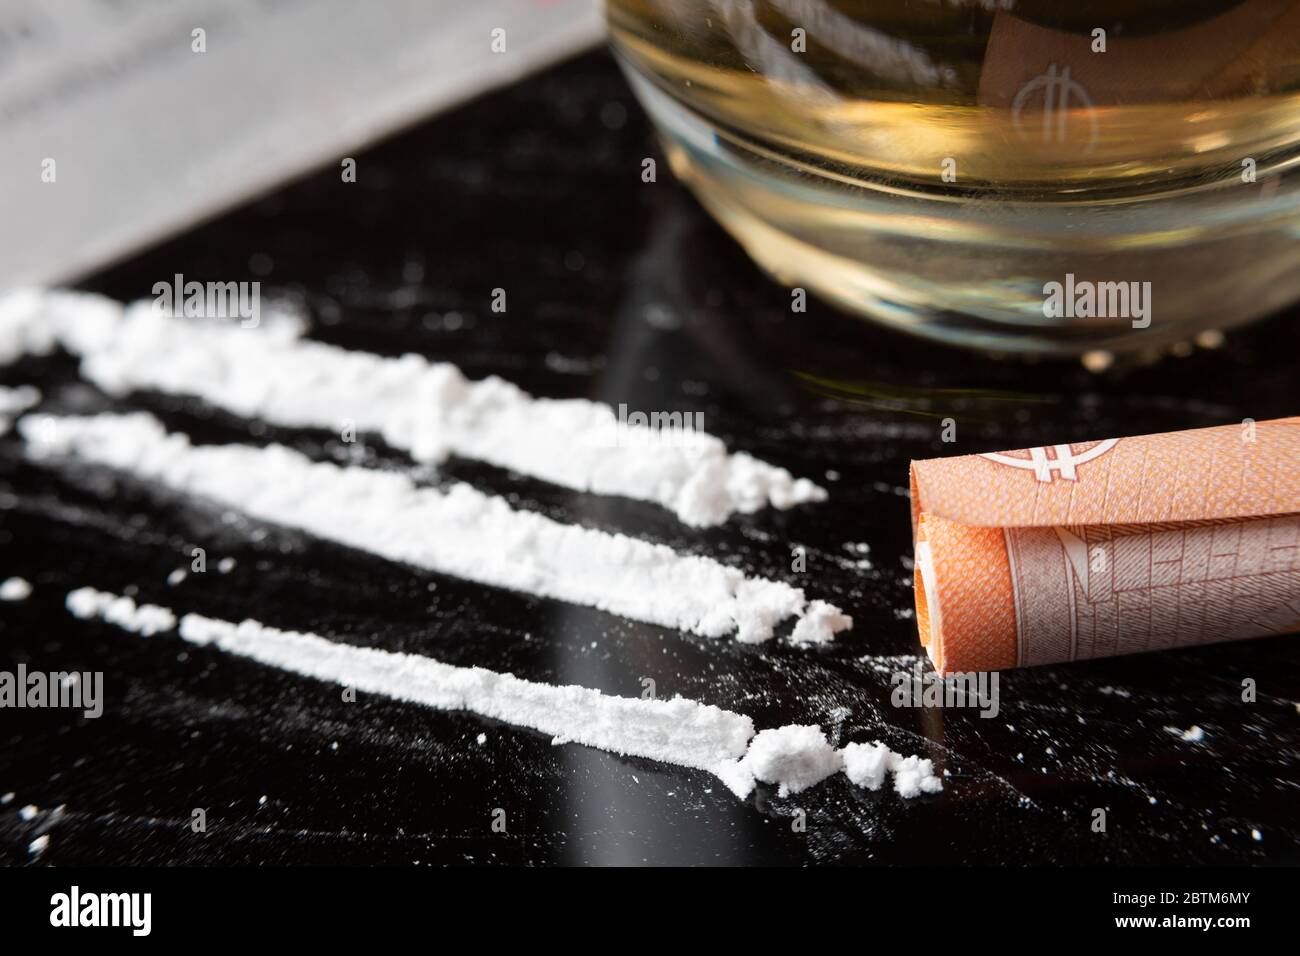 Kokainlinien auf einem Tisch und eine gerollte Banknote bereit, um geschnupft werden vorbereitet Stockfoto